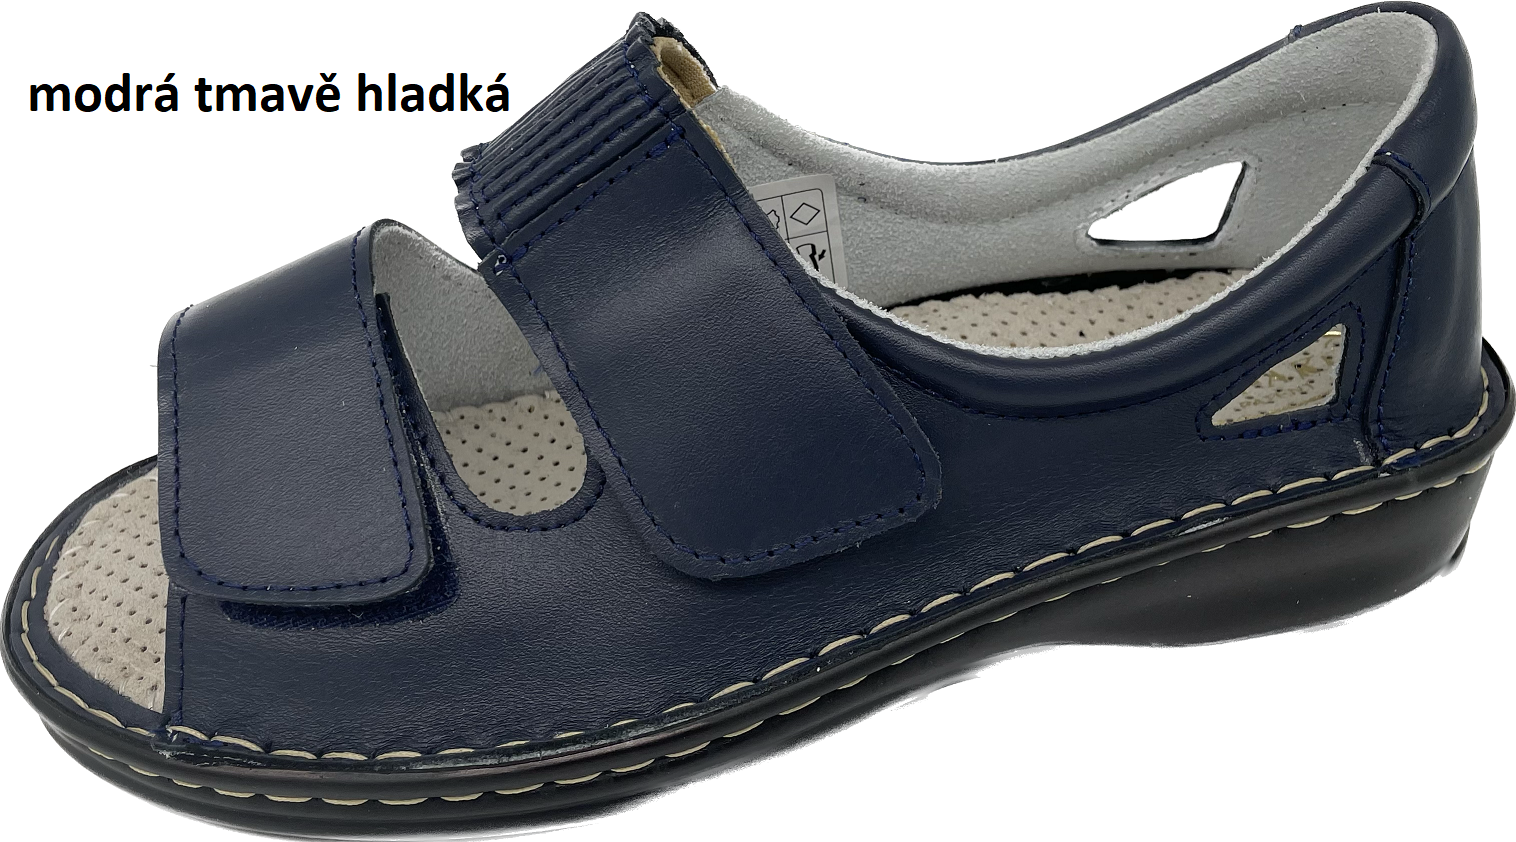 Boty Hanák vzor 306 - černá podešev Barva usně: modrá tmavě hladká, Velikosti obuvi: 40